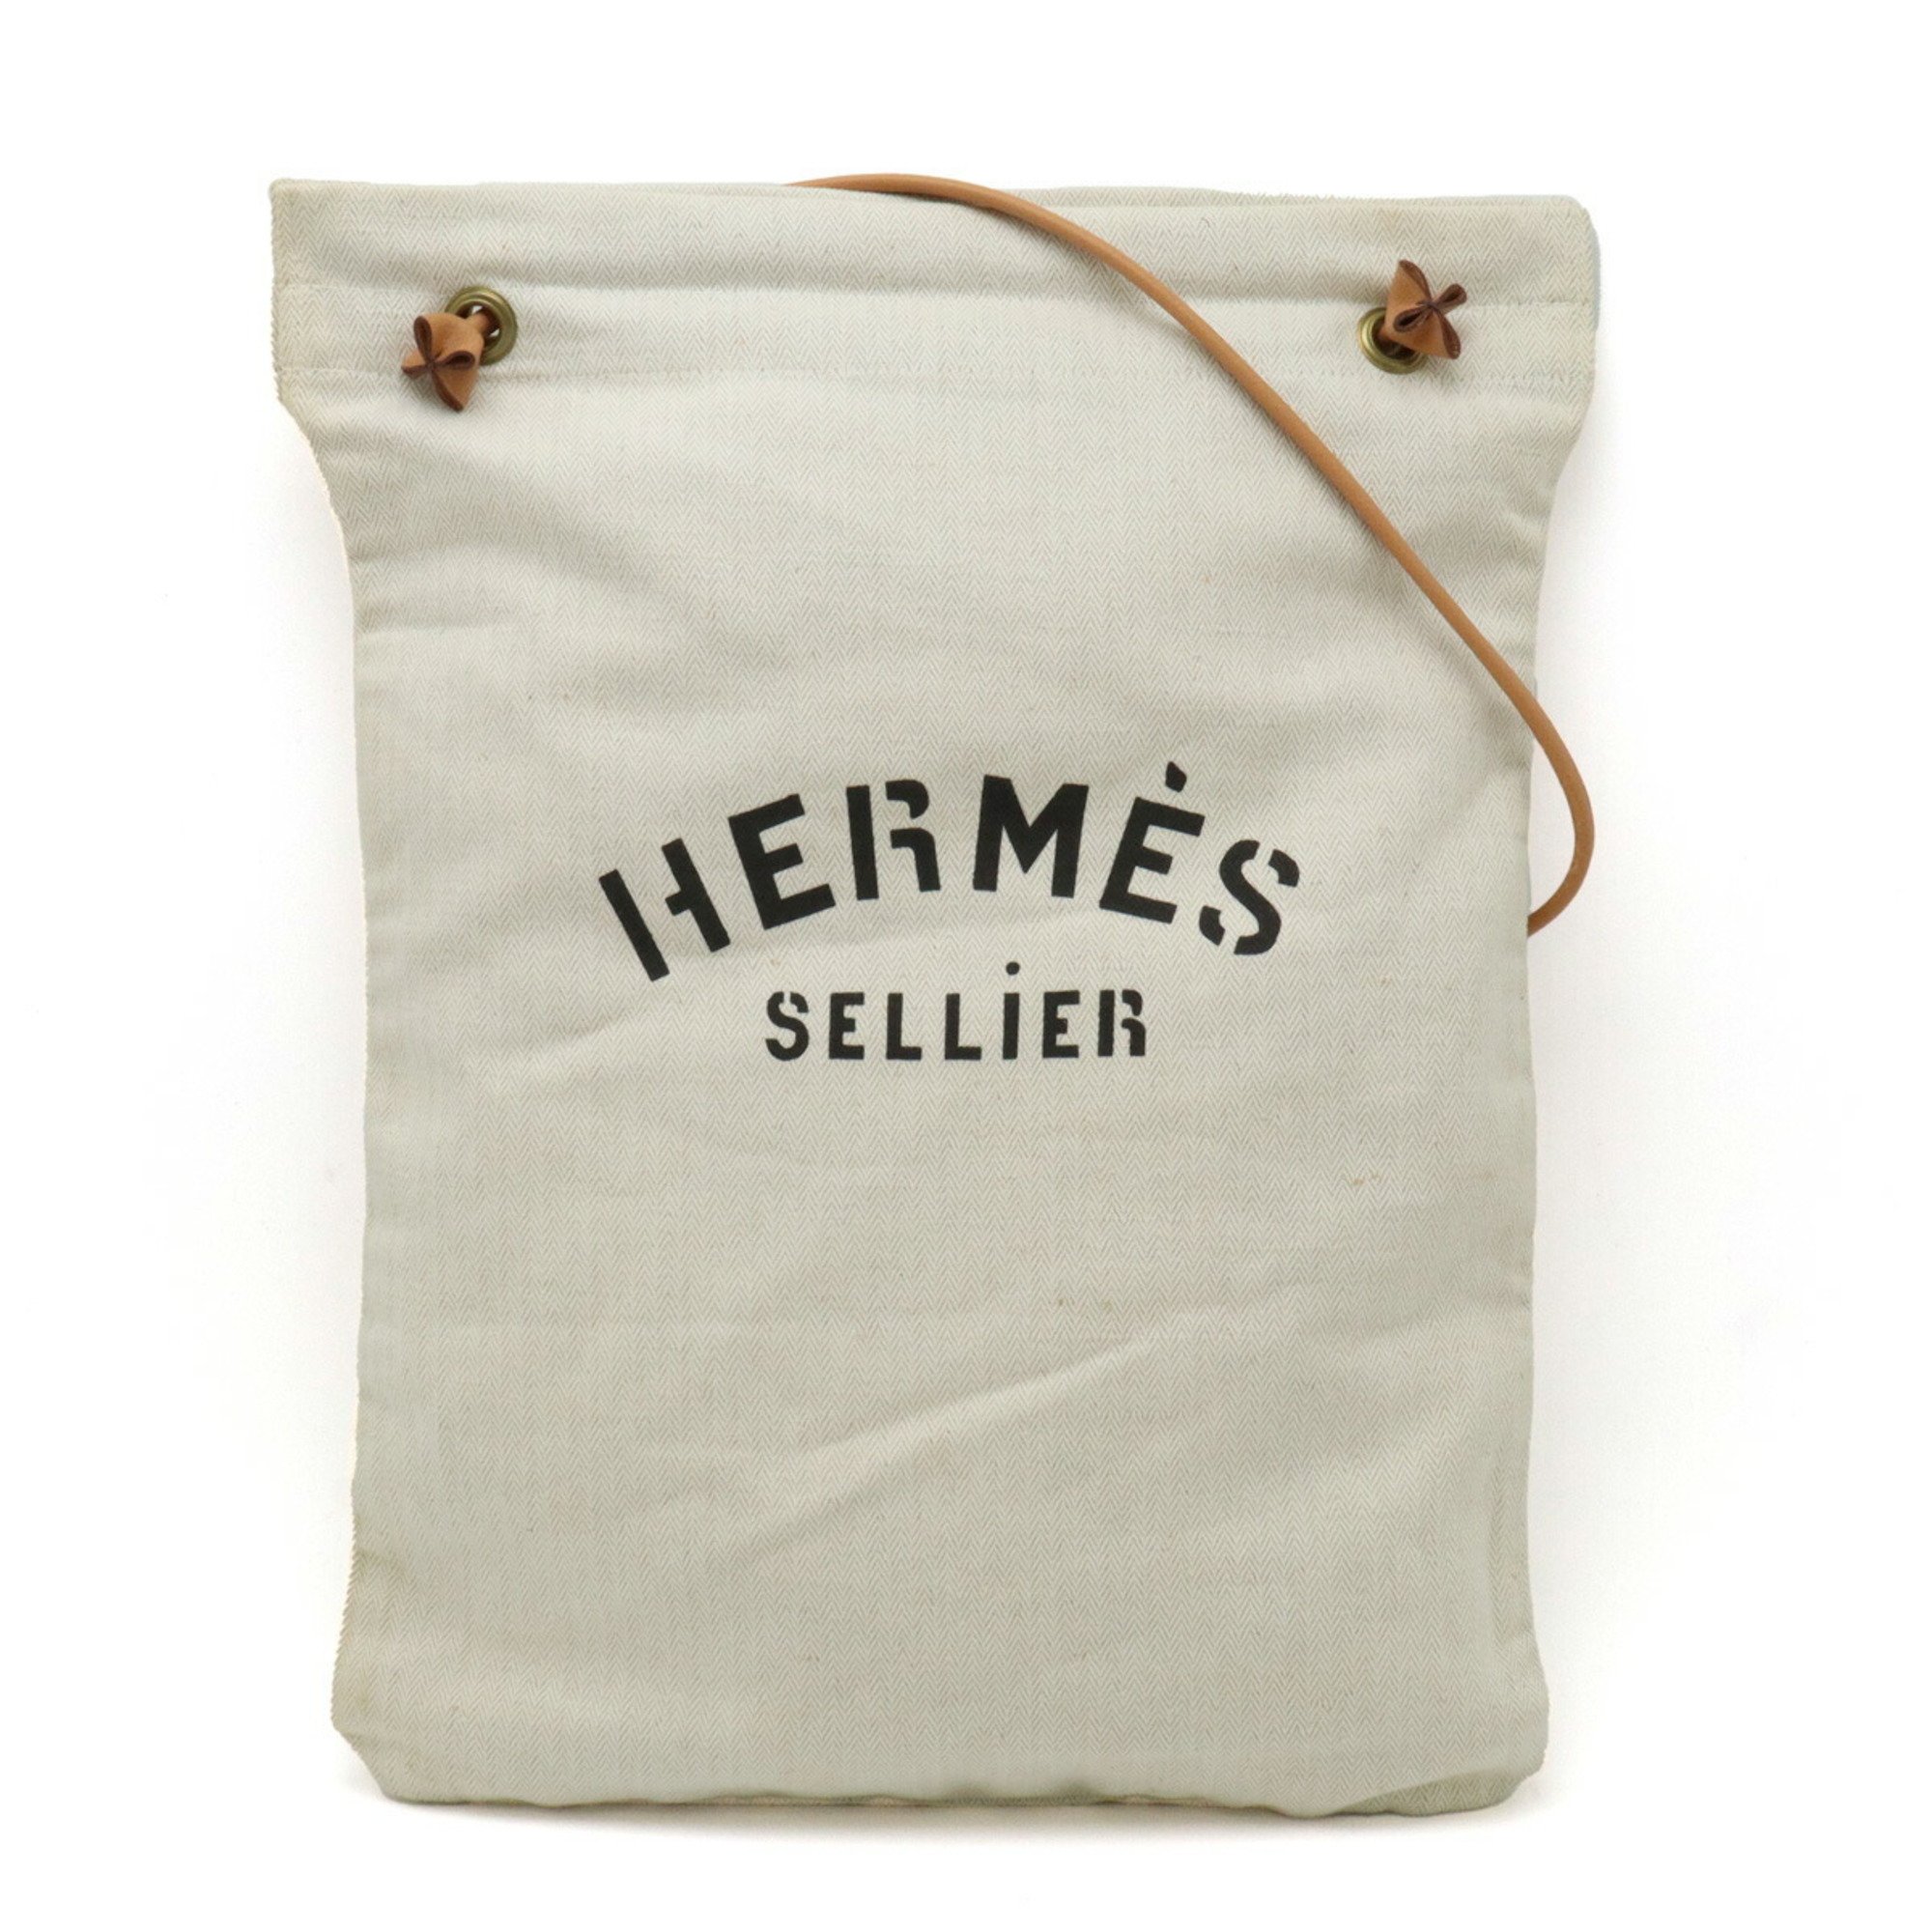 HERMES Hermes Sac Aline GM Shoulder Bag Toile Chevron Leather Natural Camel